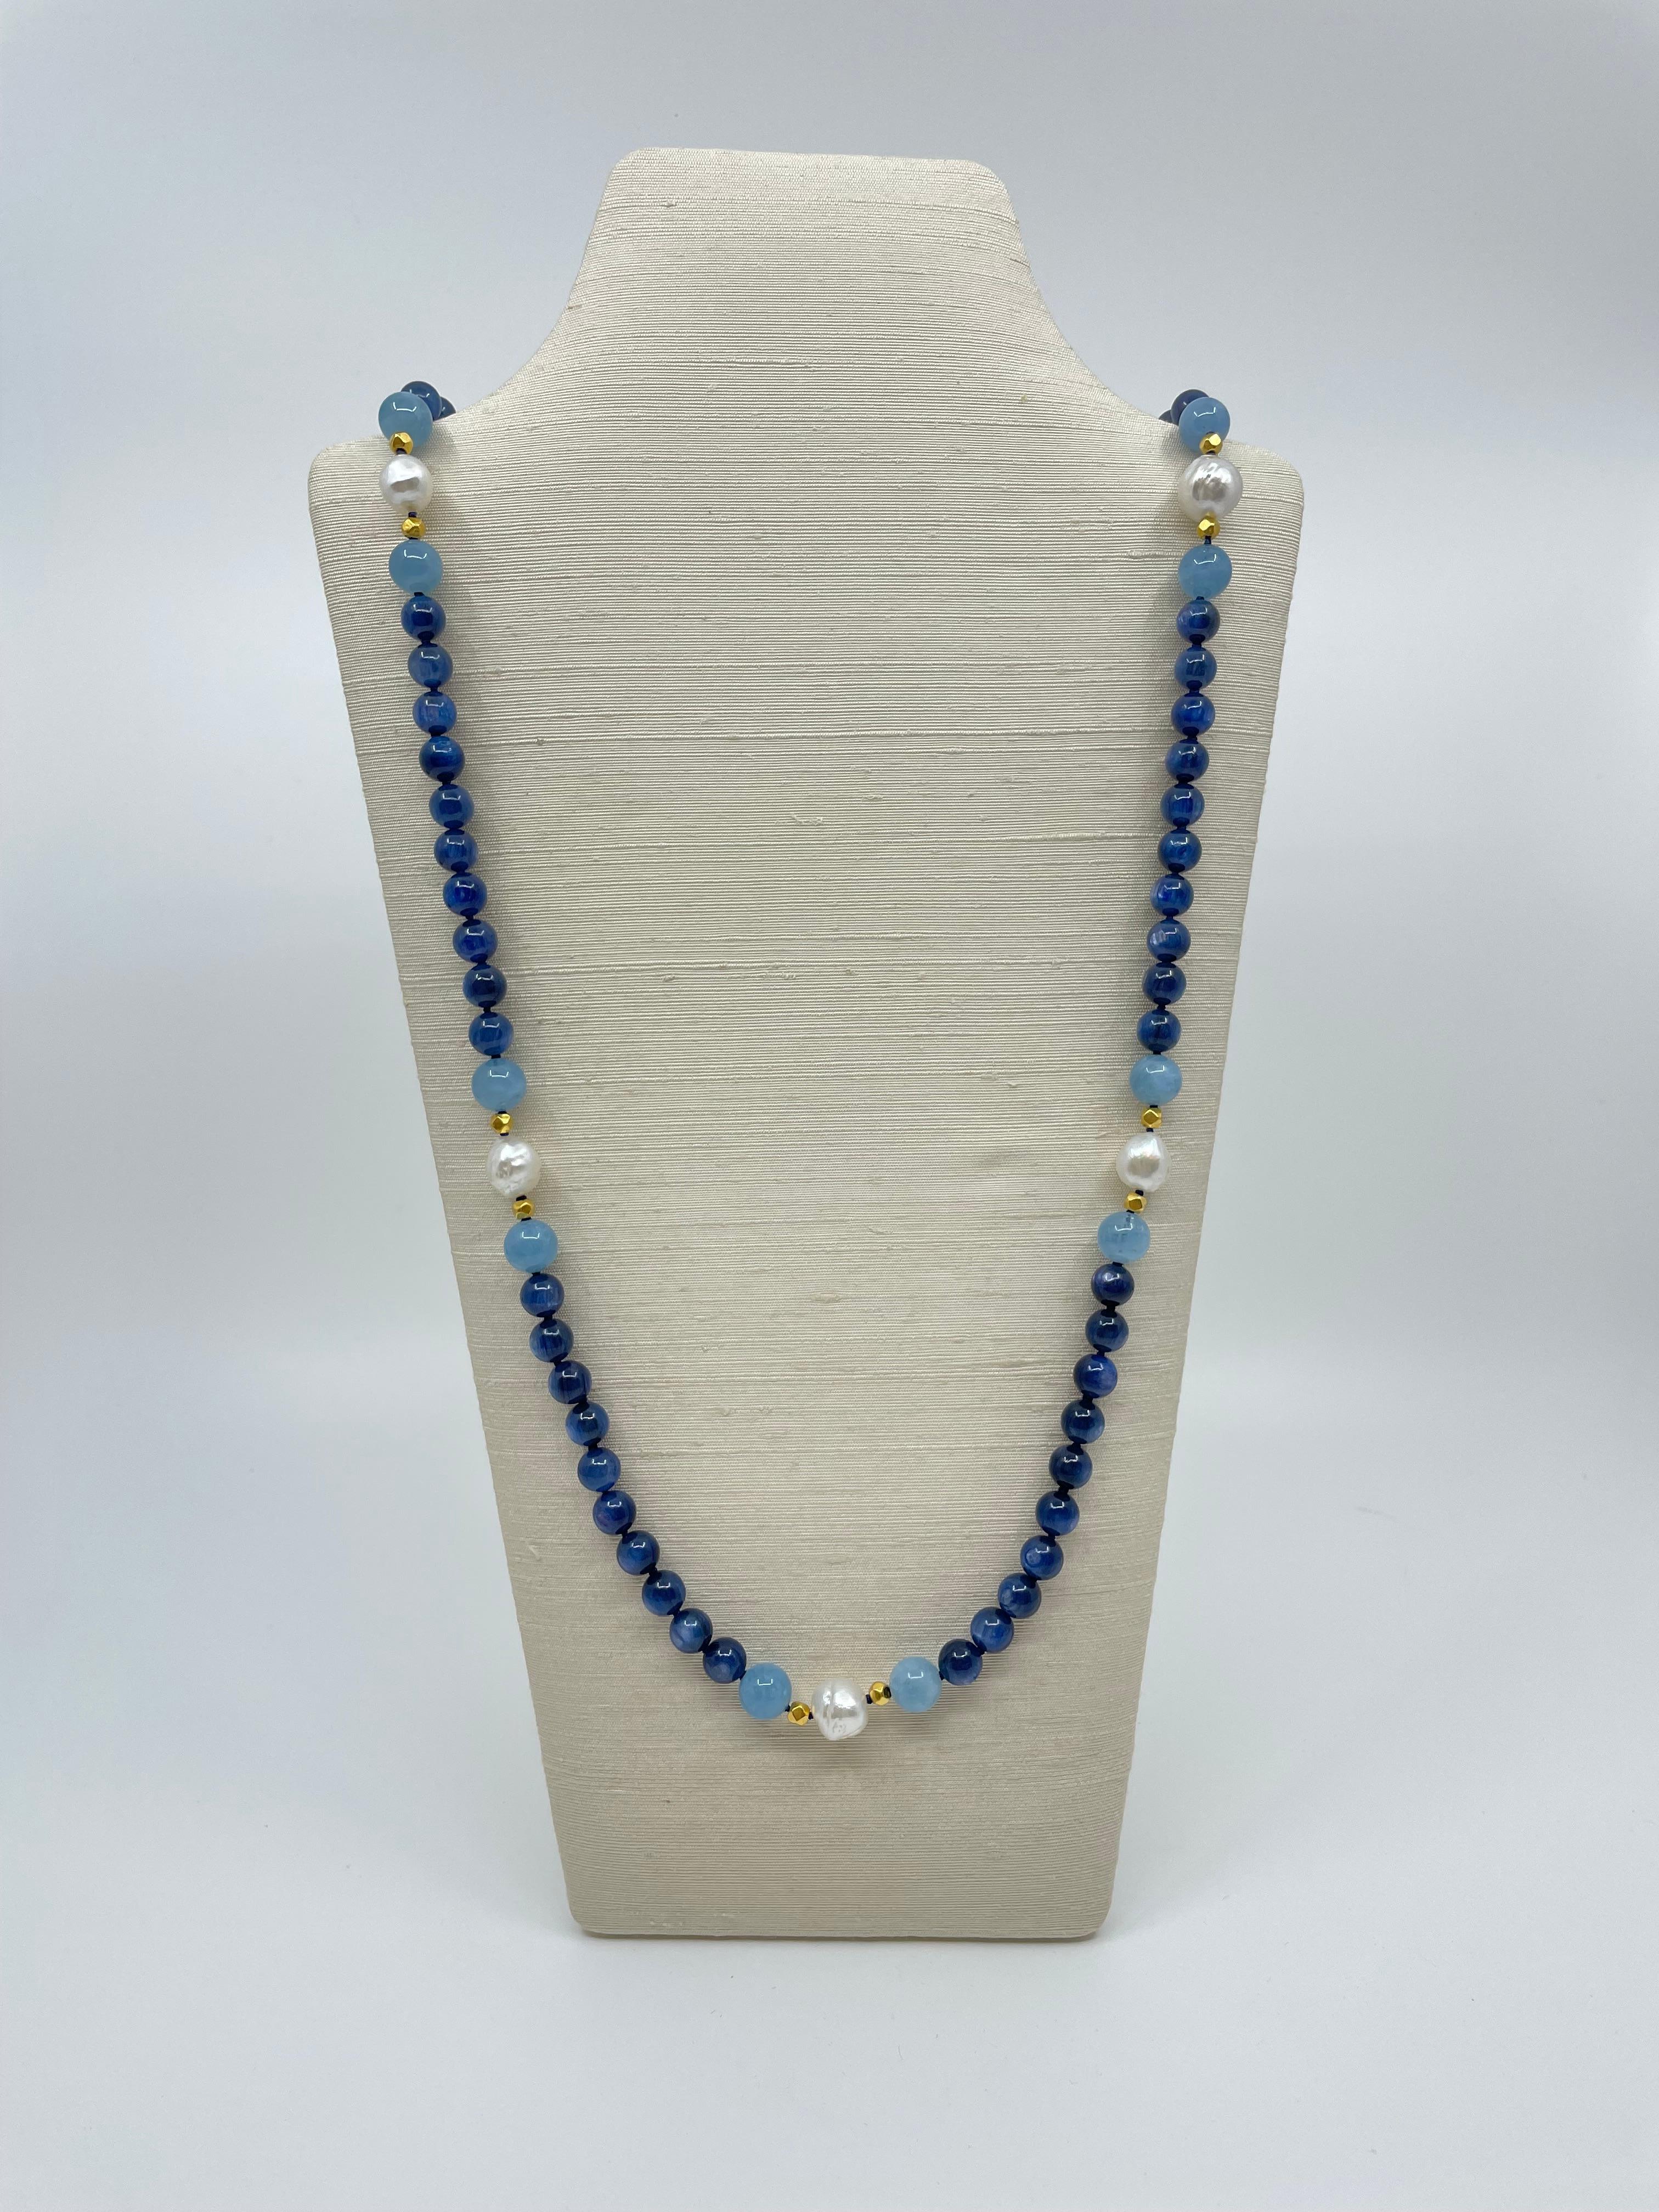 Die fabelhafte Halskette aus unserer Collection'S Amalfi ist handgefertigt und besteht aus leuchtend blauen Kyanit-Perlen, die mit sechs Gruppen zartblauer Aquamarin-Perlen und Perlen aus massivem 18-karätigem Gold durchsetzt sind. In der Mitte